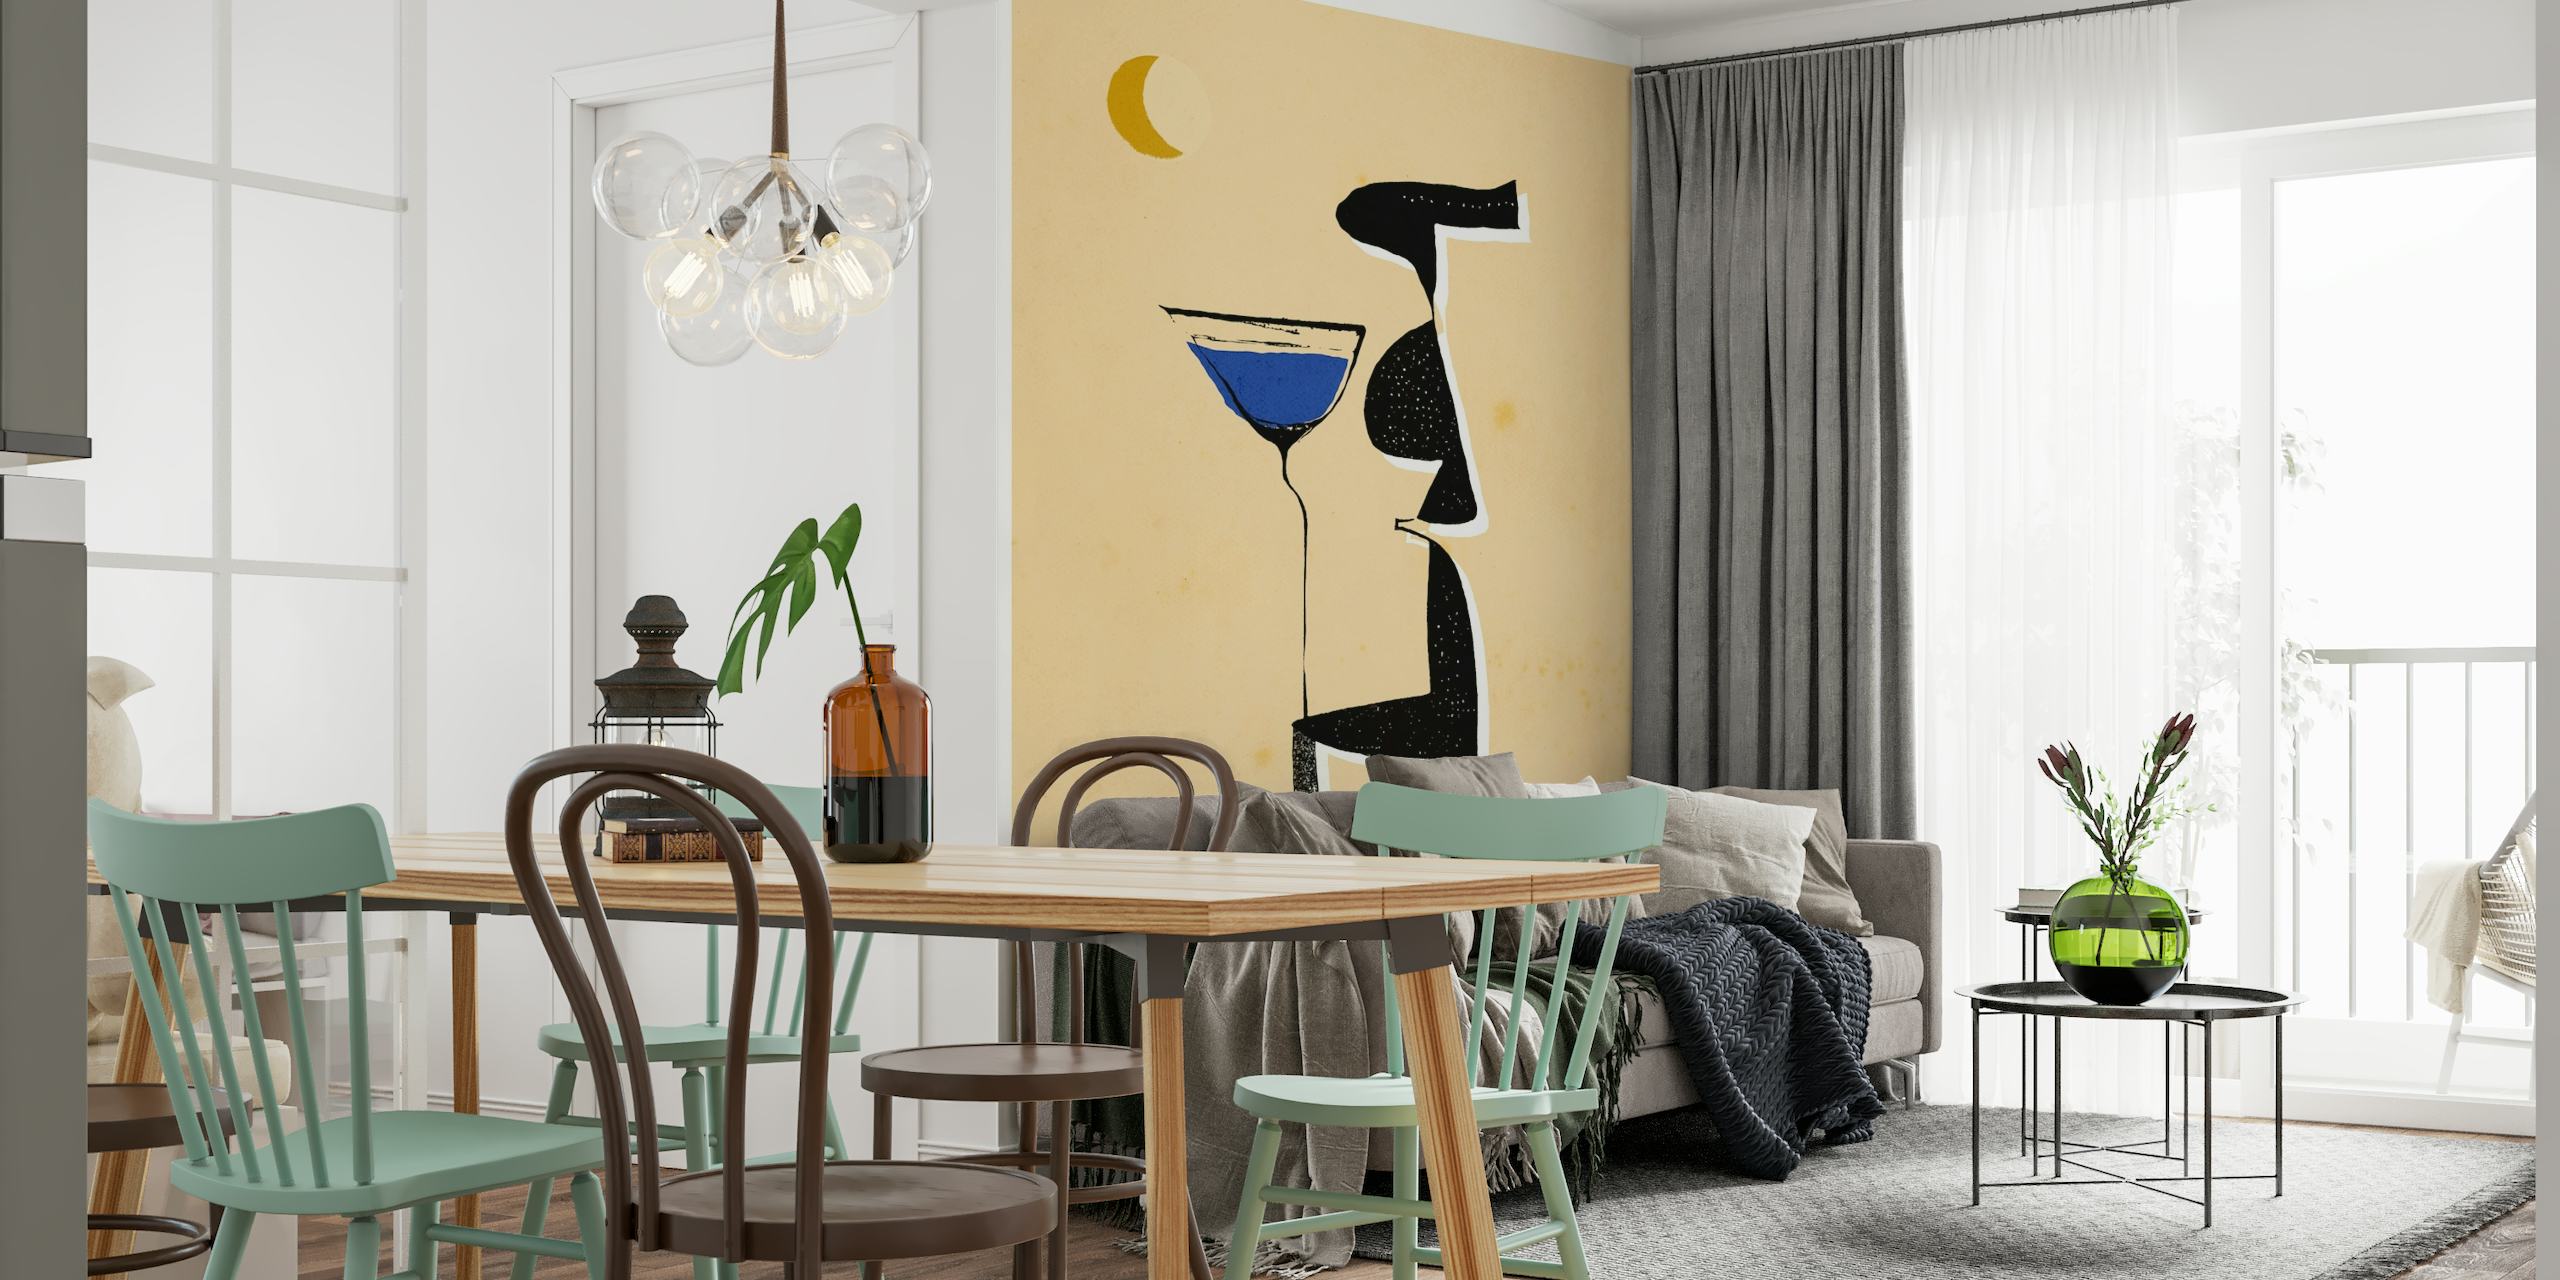 Wandbild mit abstrakter Figur „Le Monsieur“ in warmen Tönen, blauen Akzenten und Halbmond.